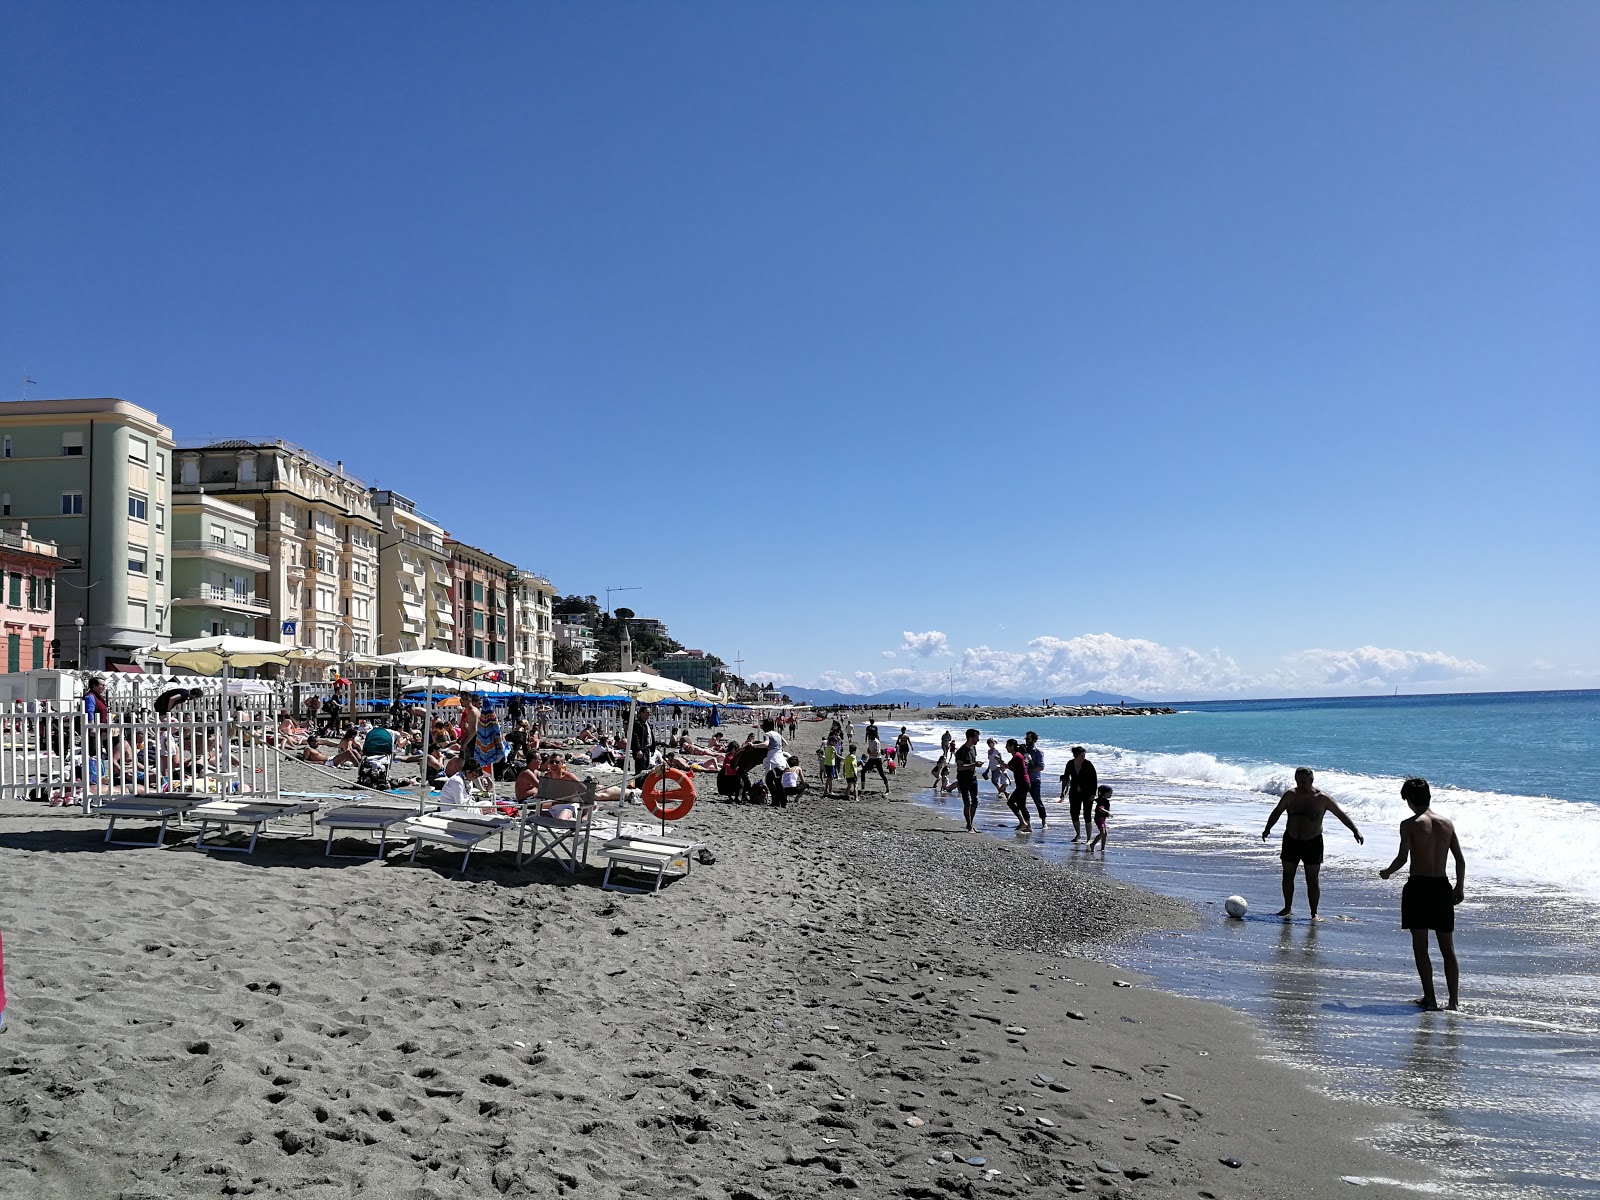 Foto av Spiaggia Varazze med hög nivå av renlighet